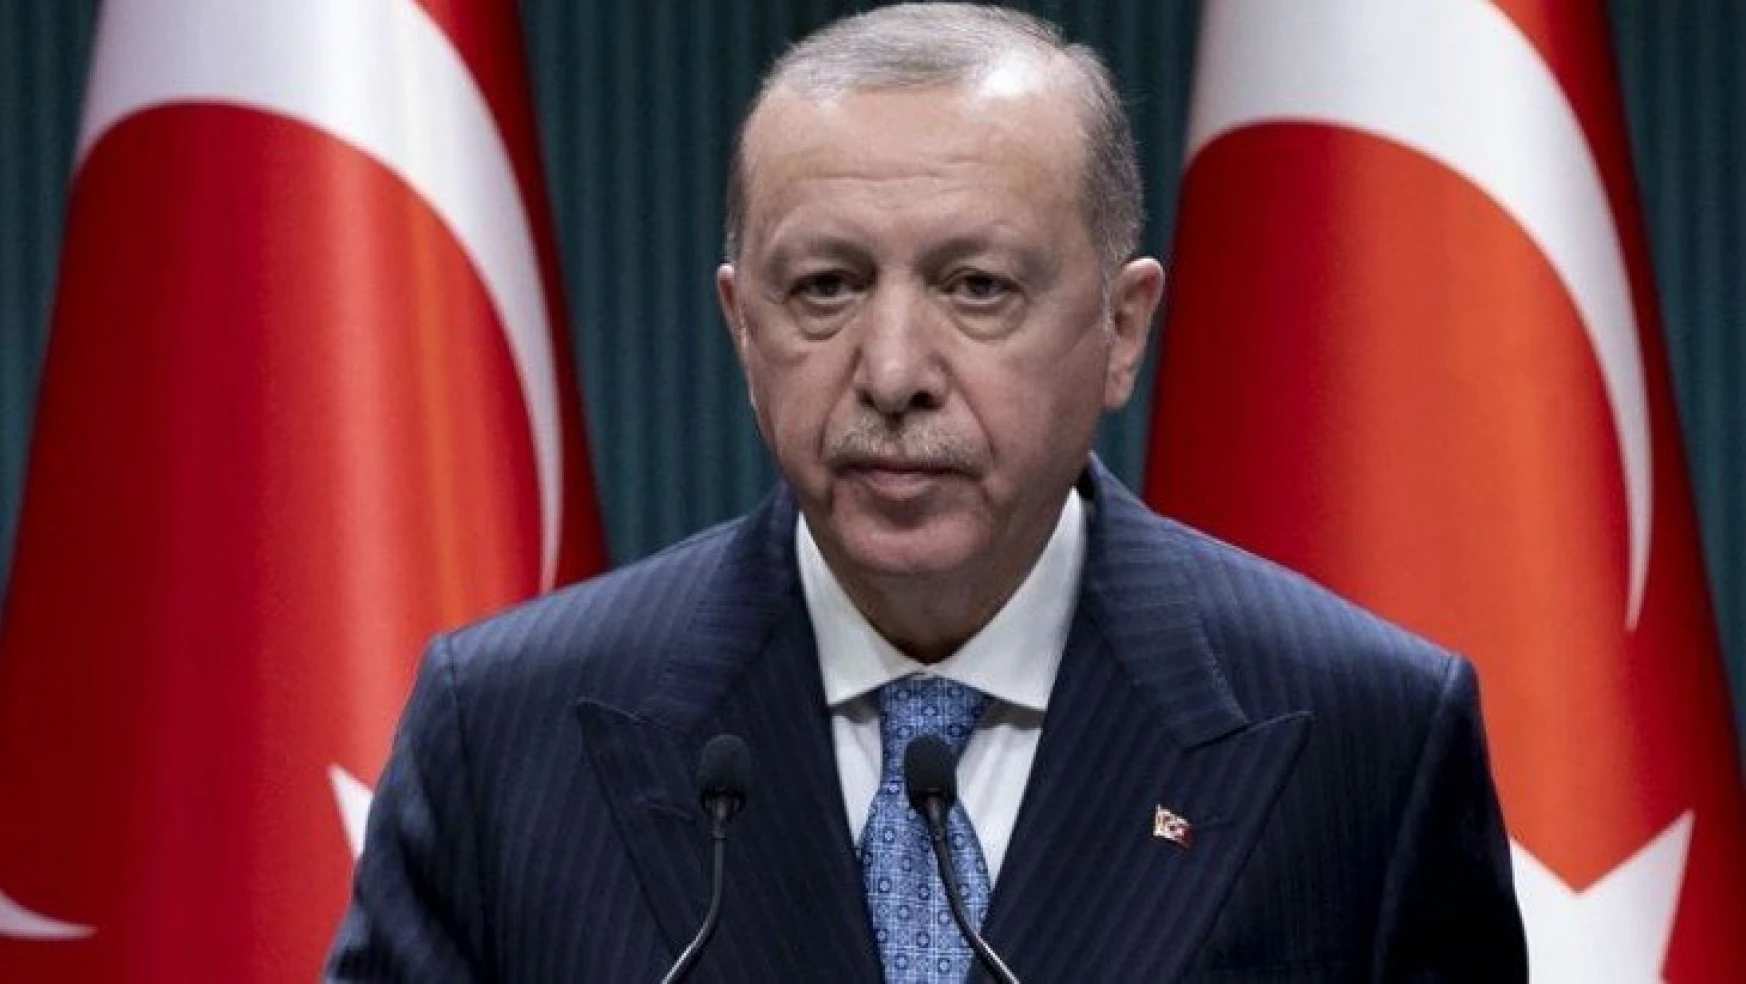 Başkan Erdoğan alınan kararları açıkladı